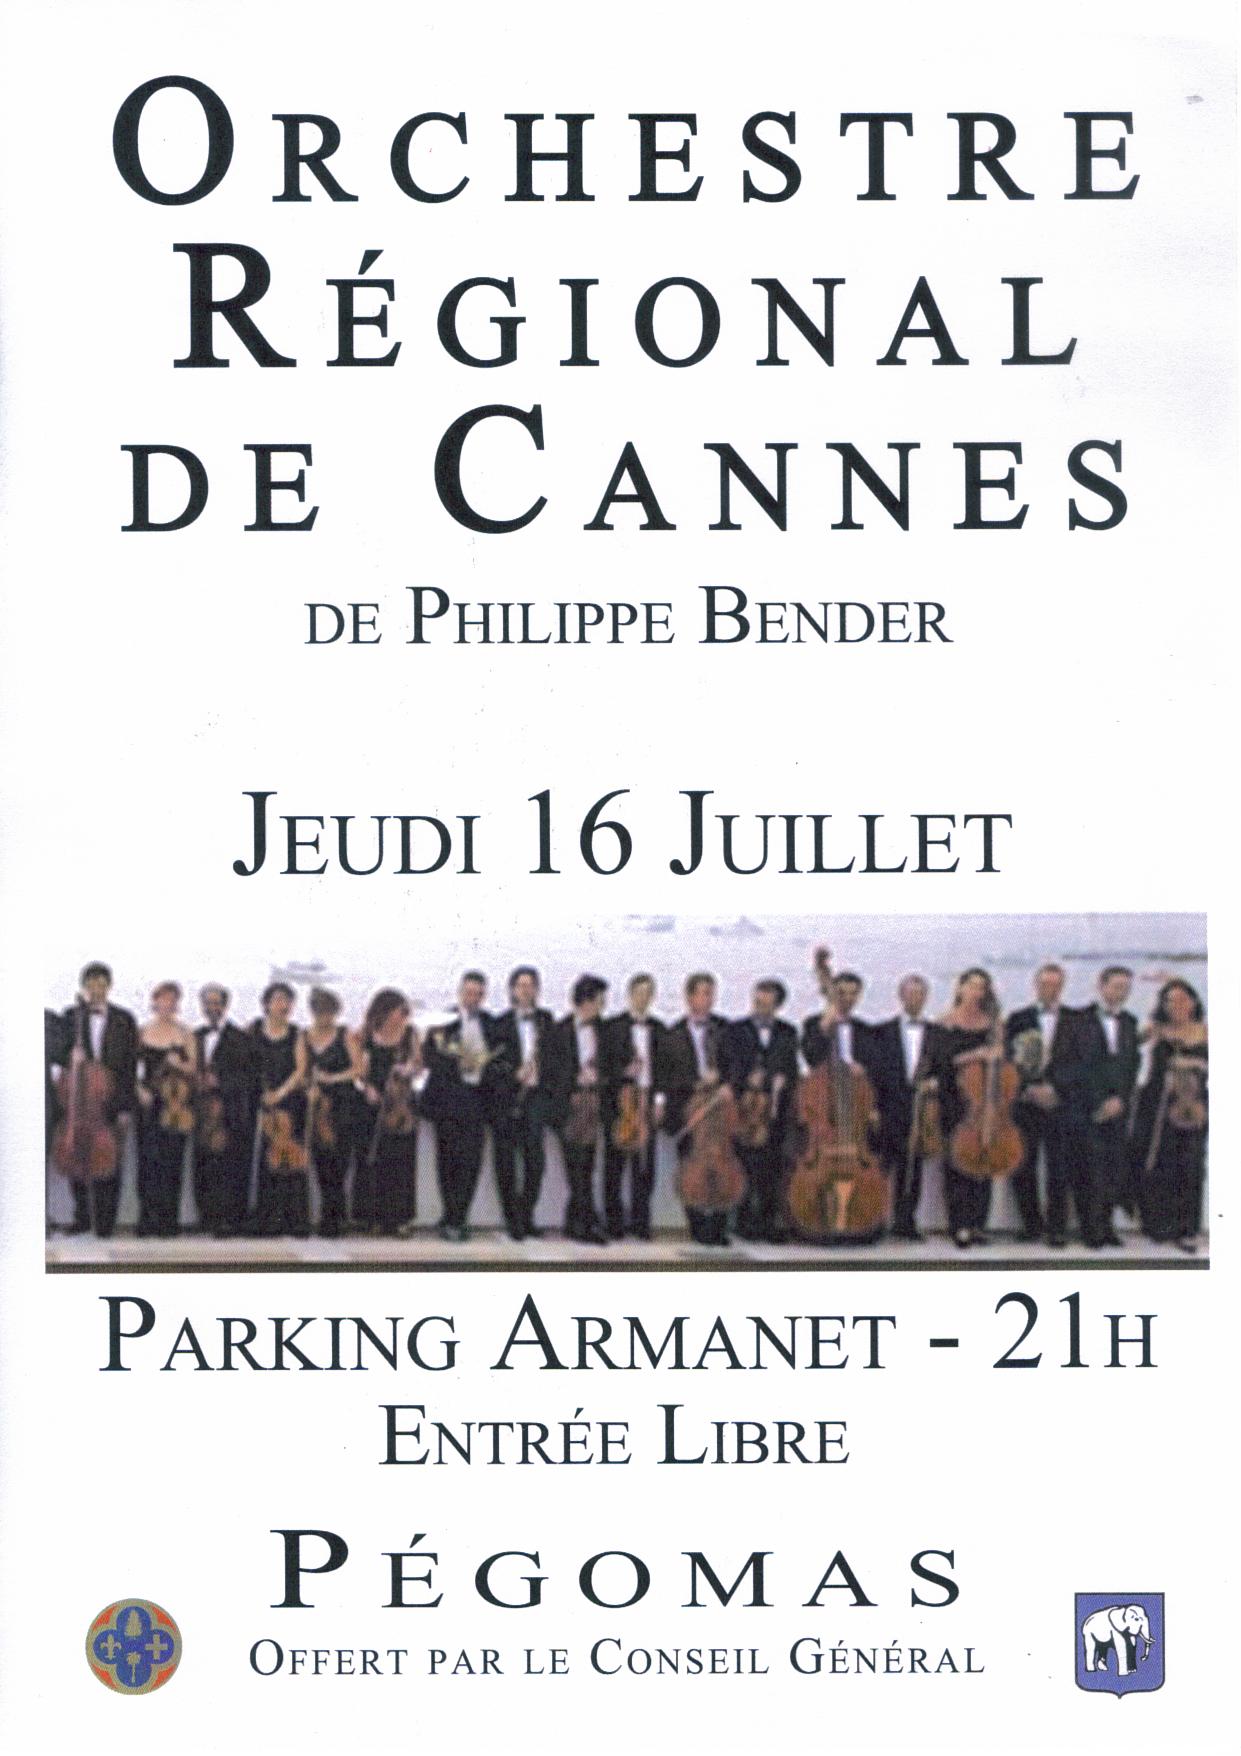 Galerie photo de l'Orchestre Régional de Cannes à Pégomas en 2009